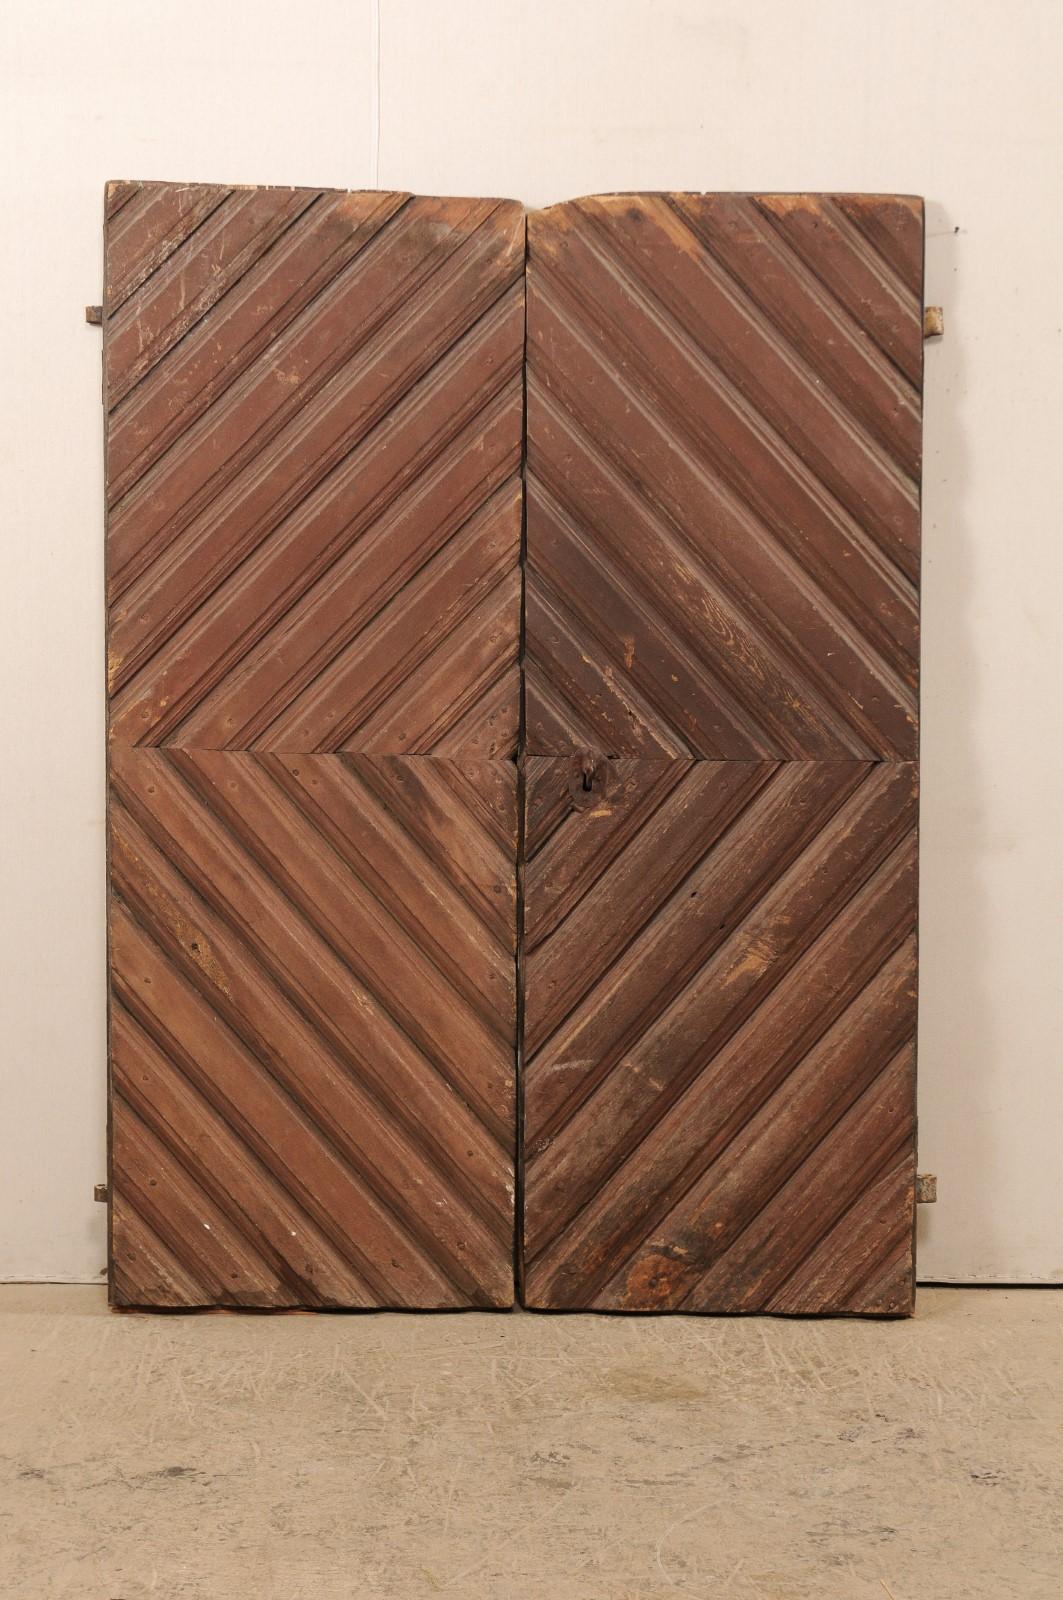 Une paire de portes suédoises avec des motifs géométriques et une peinture originale du 19ème siècle. Cette paire de portes anciennes de Suède présente un motif répétitif en forme de diamant, composé d'un diamant plus petit à l'endroit où les portes